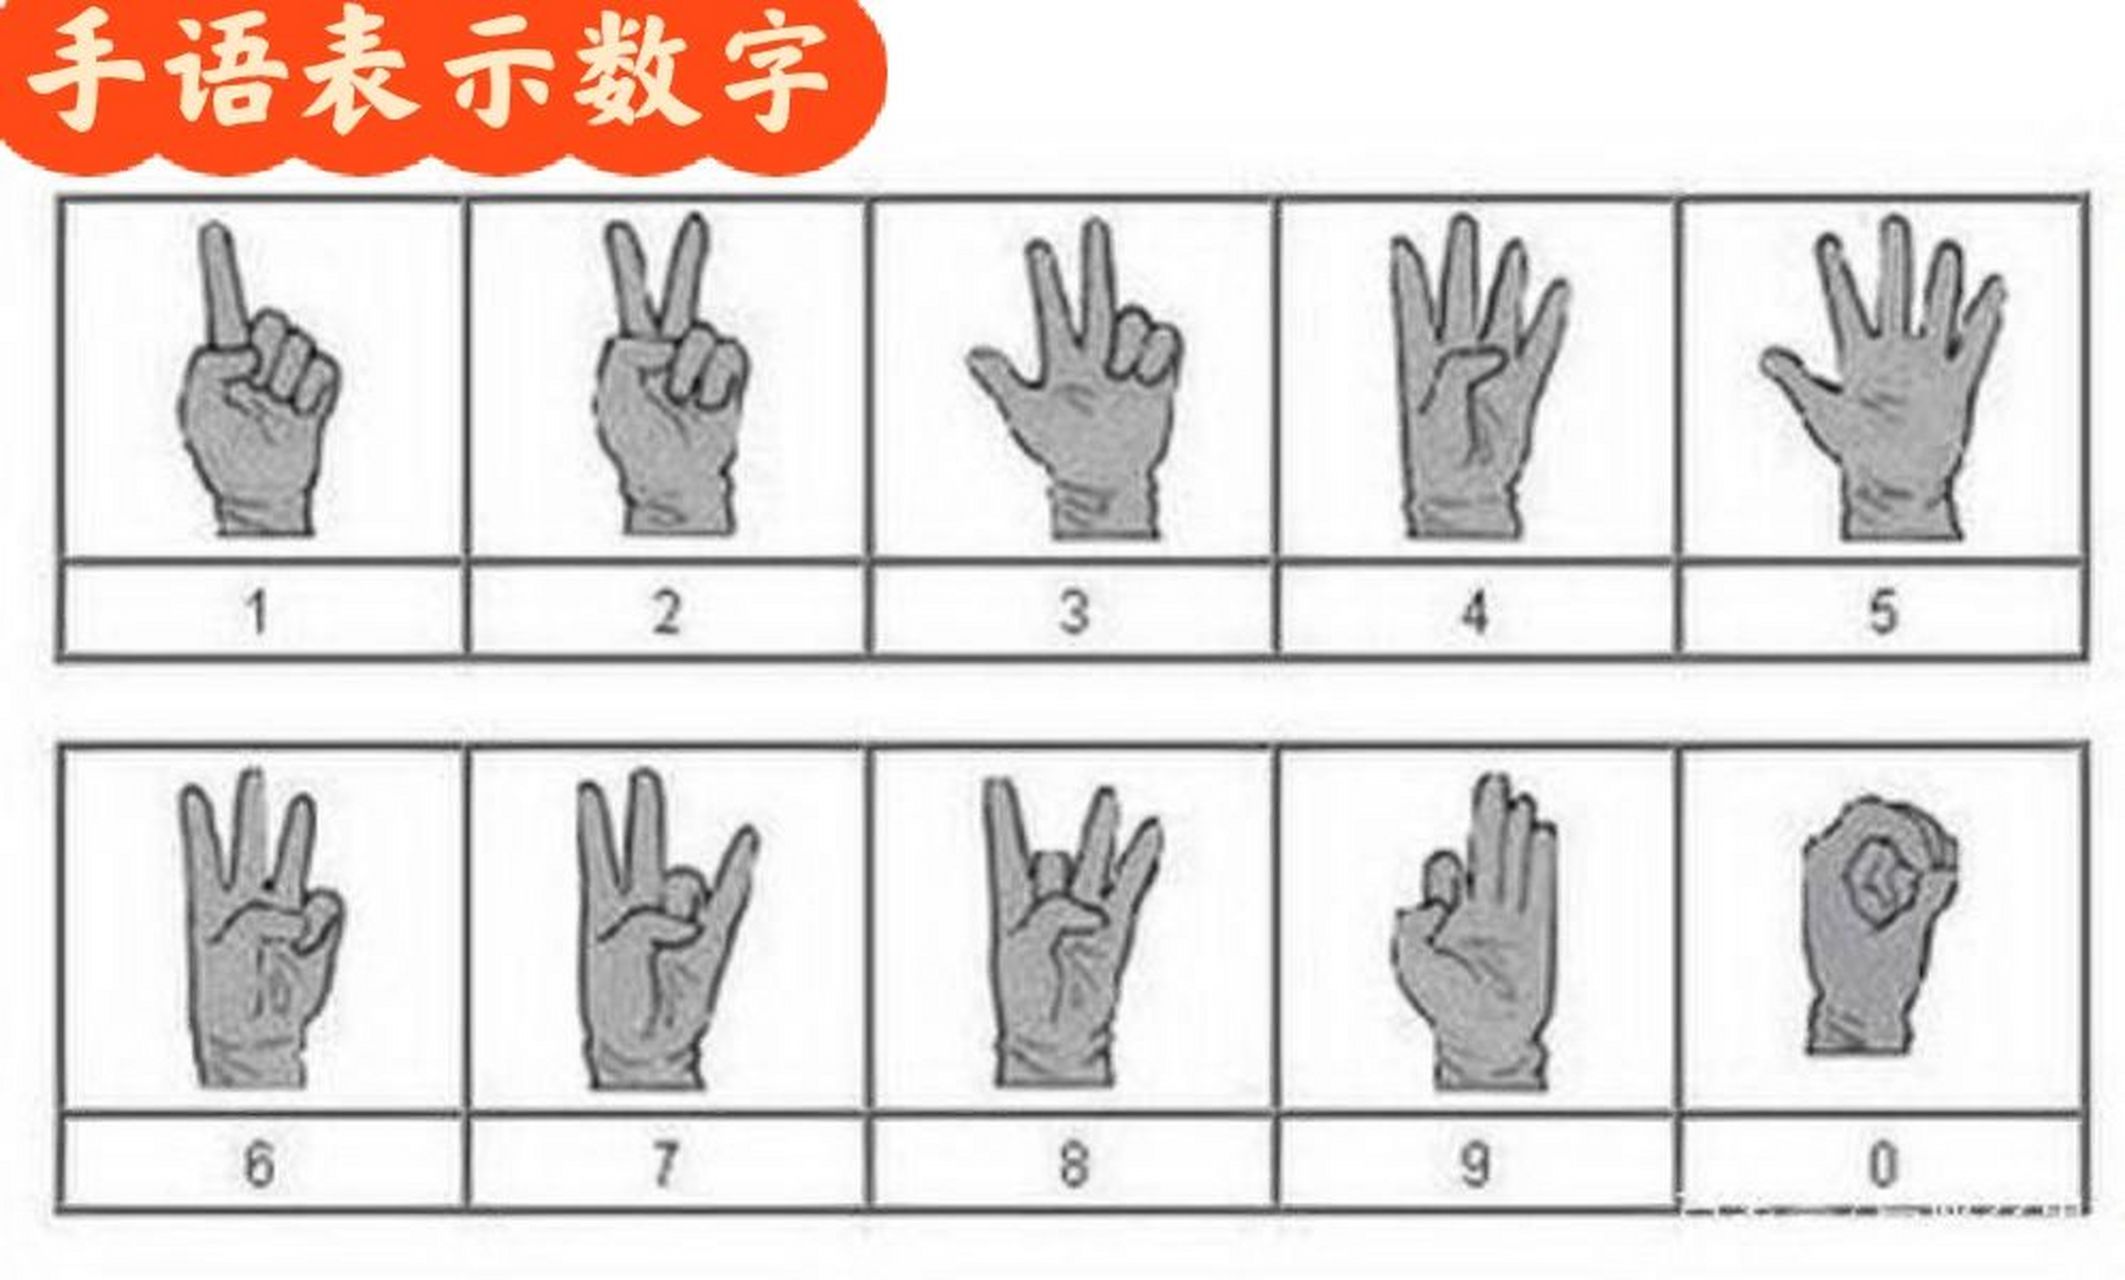 手势91表示94数字  划拳的一到十标准手势如下 一:伸出食指 二